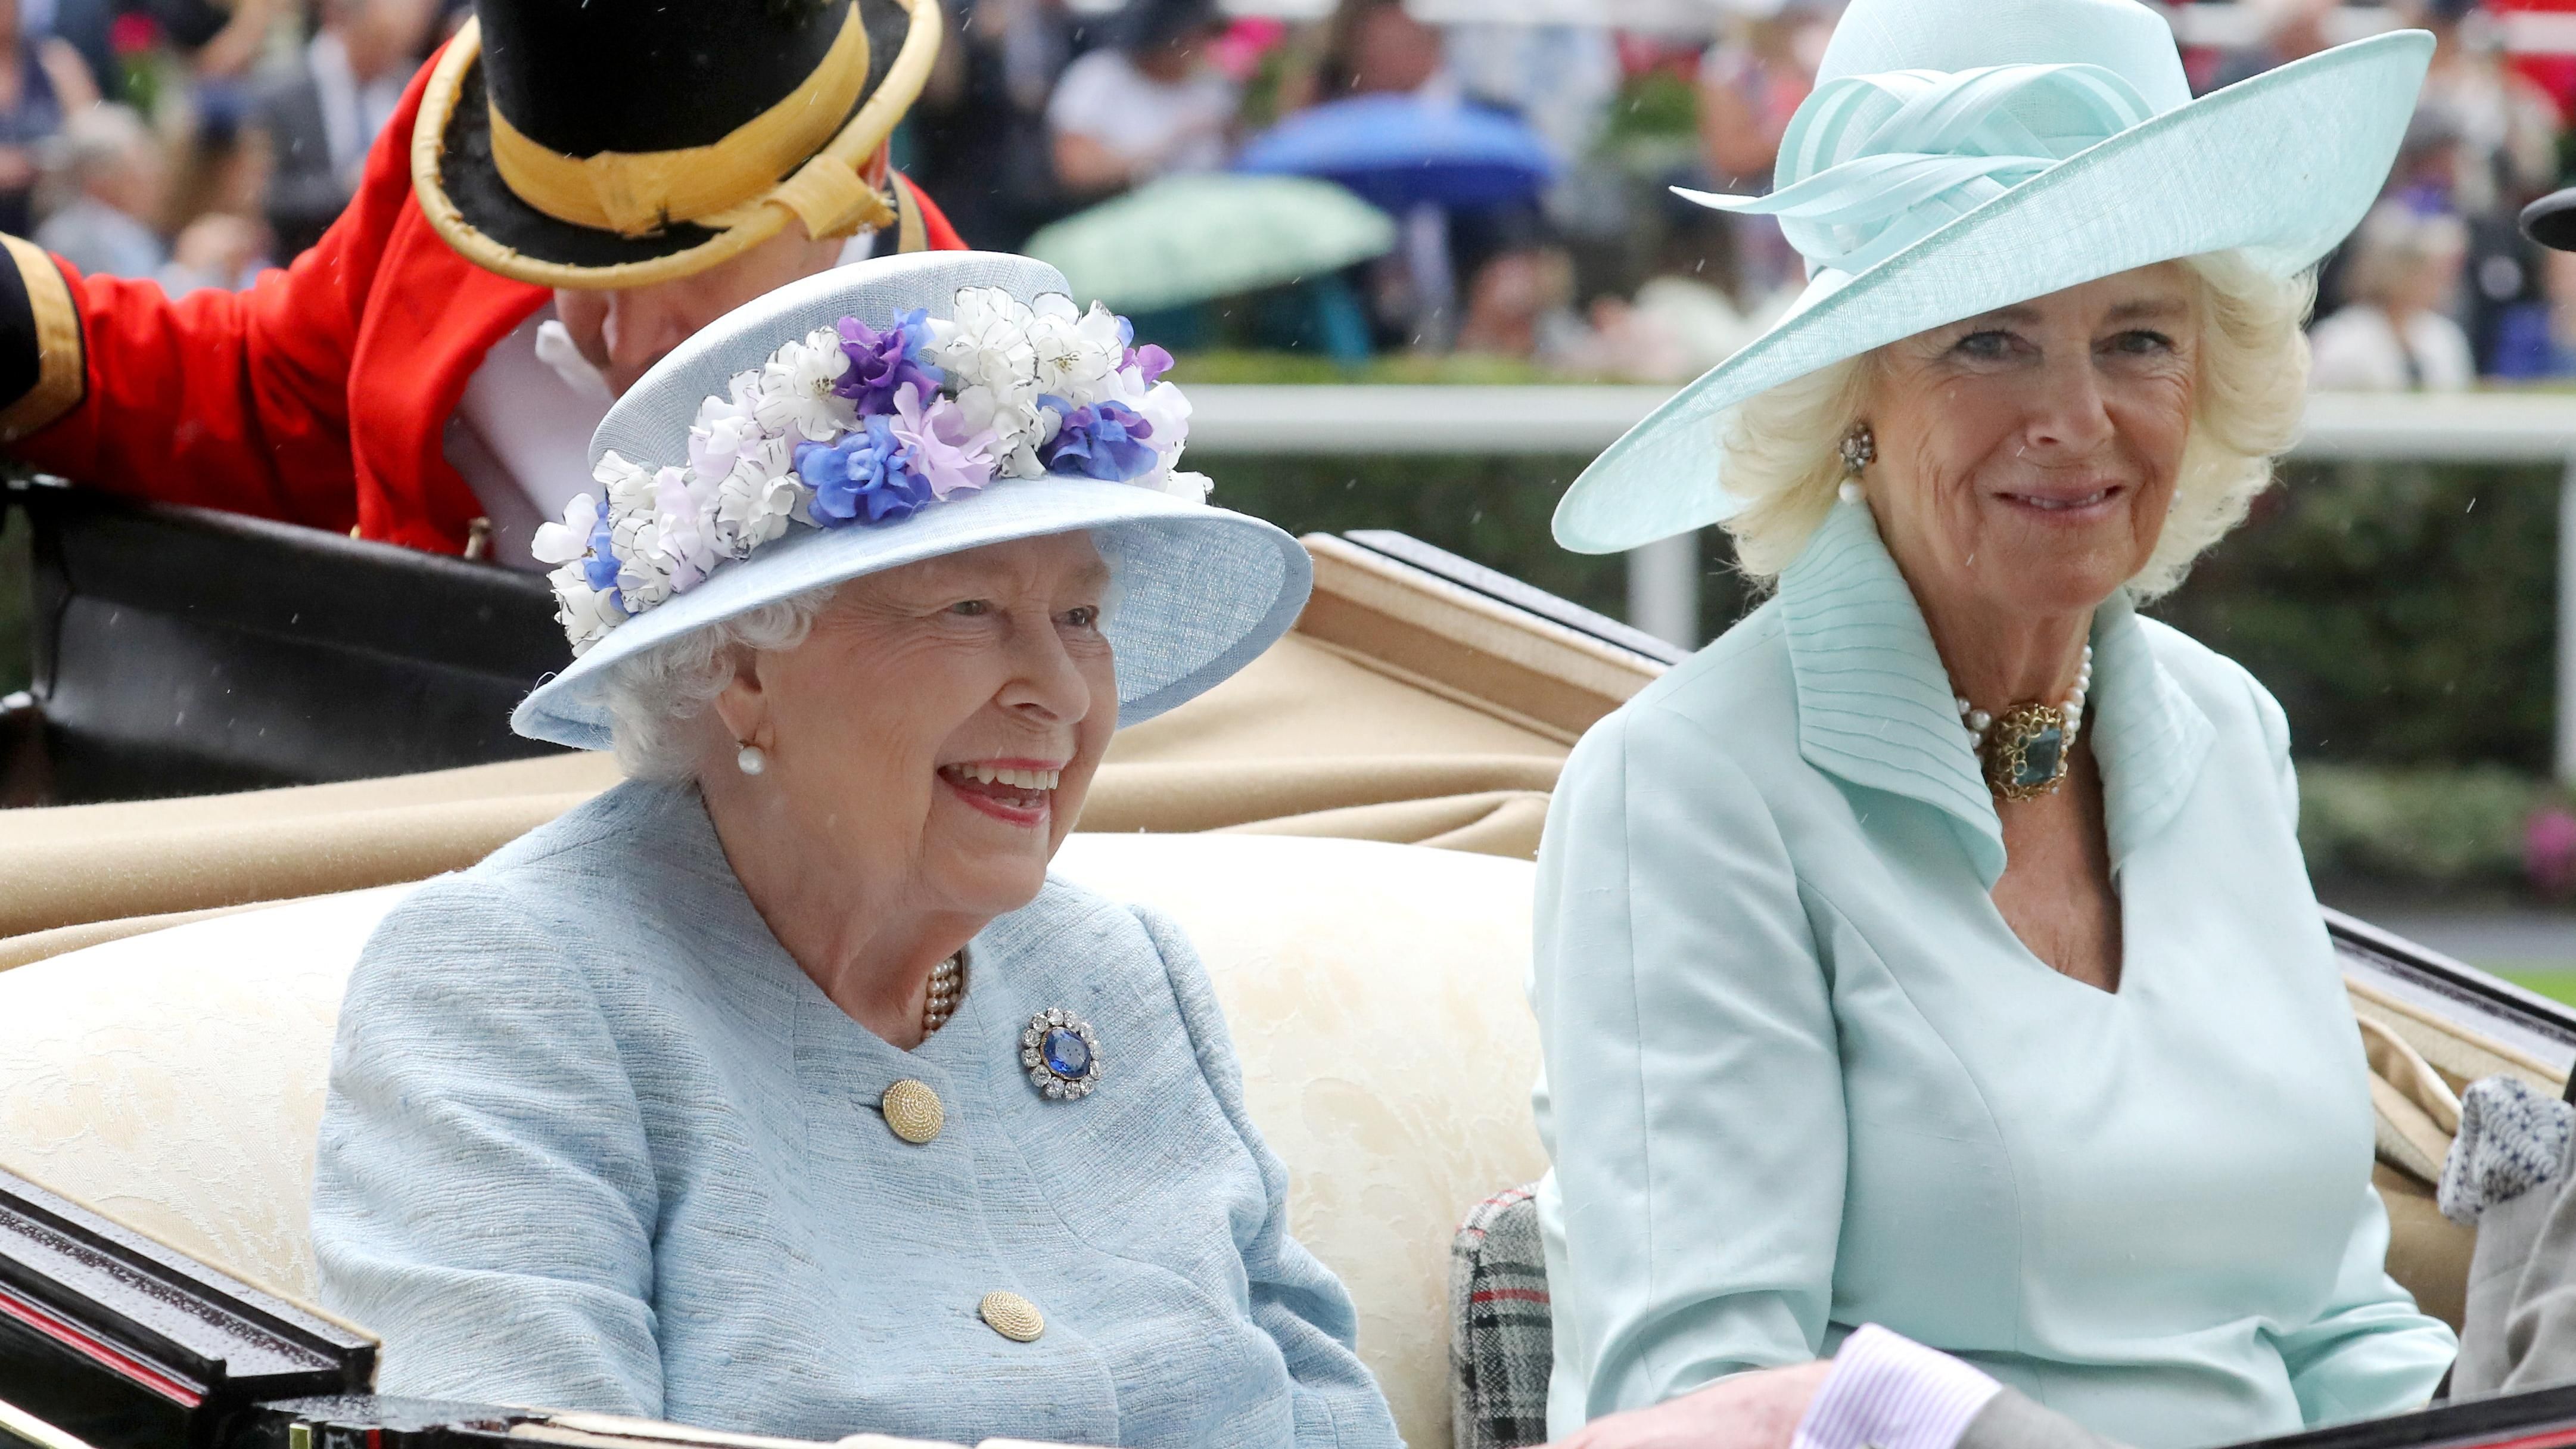 Цвет настроения – голубой: Елизавета II снова появилась на скачках в пальто голубого оттенка